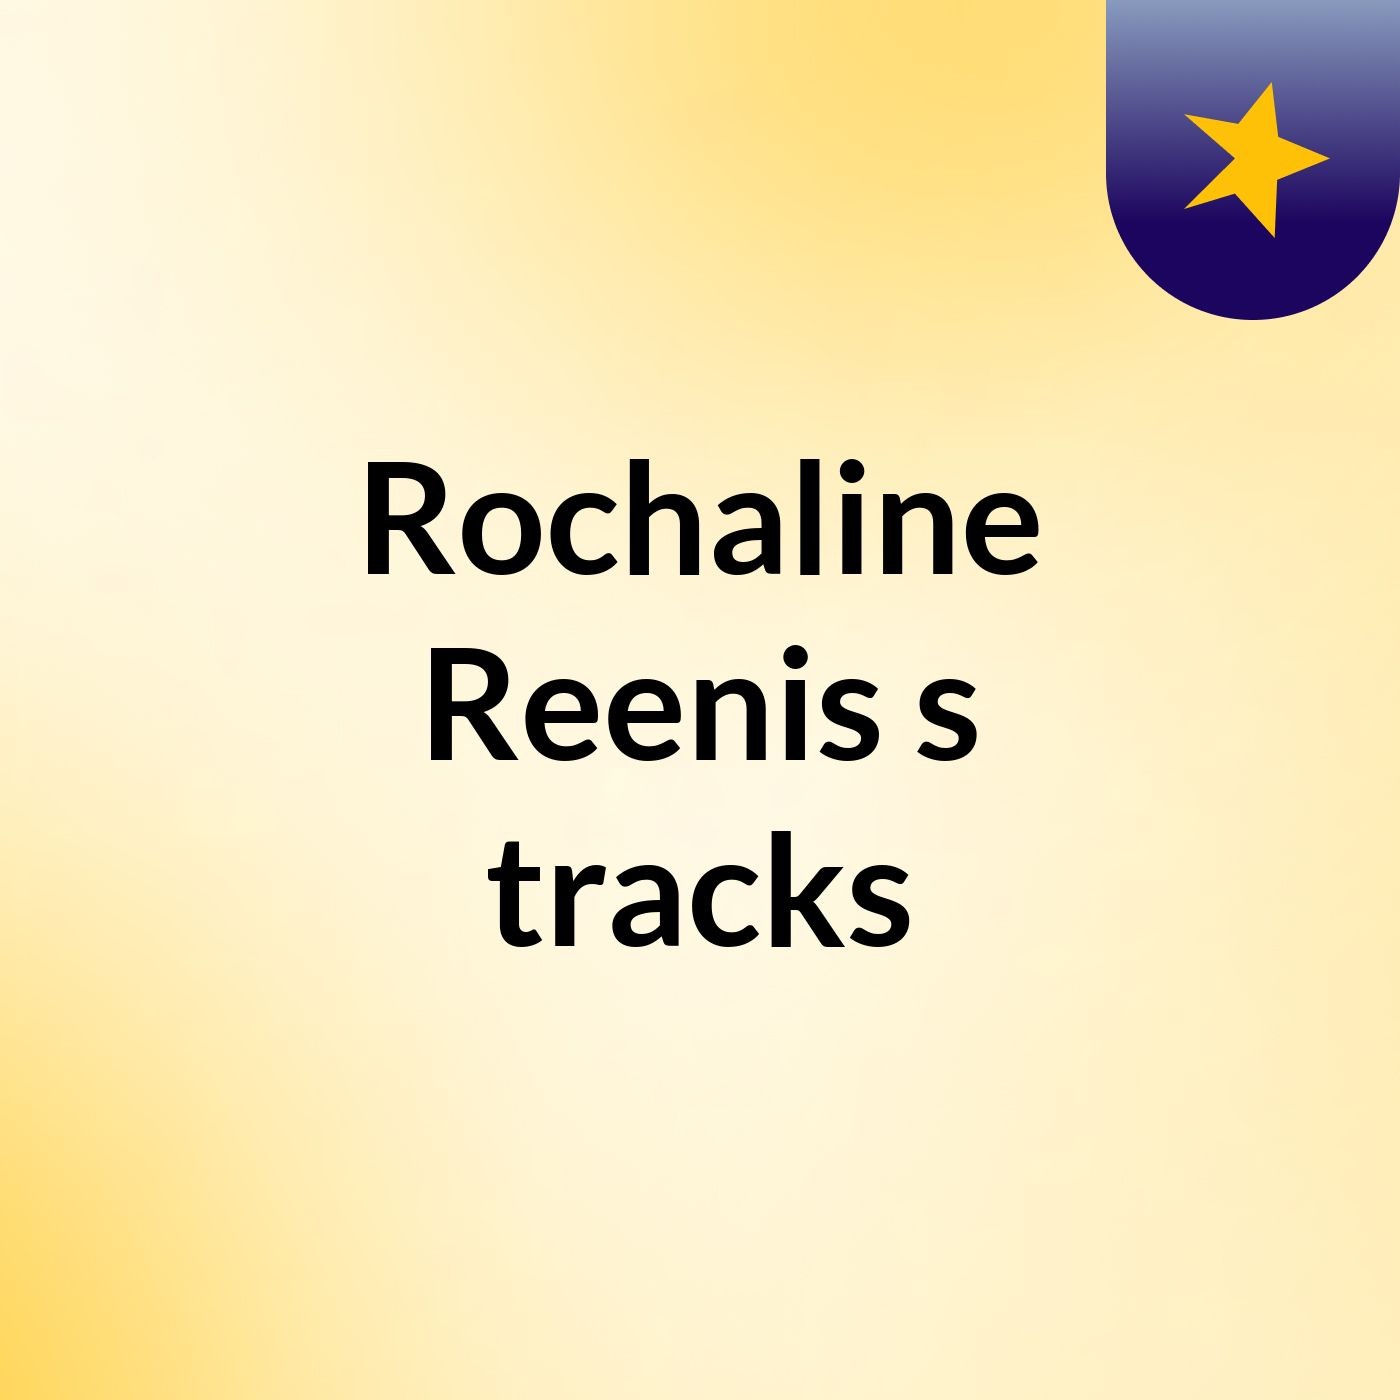 Rochaline Reenis's tracks